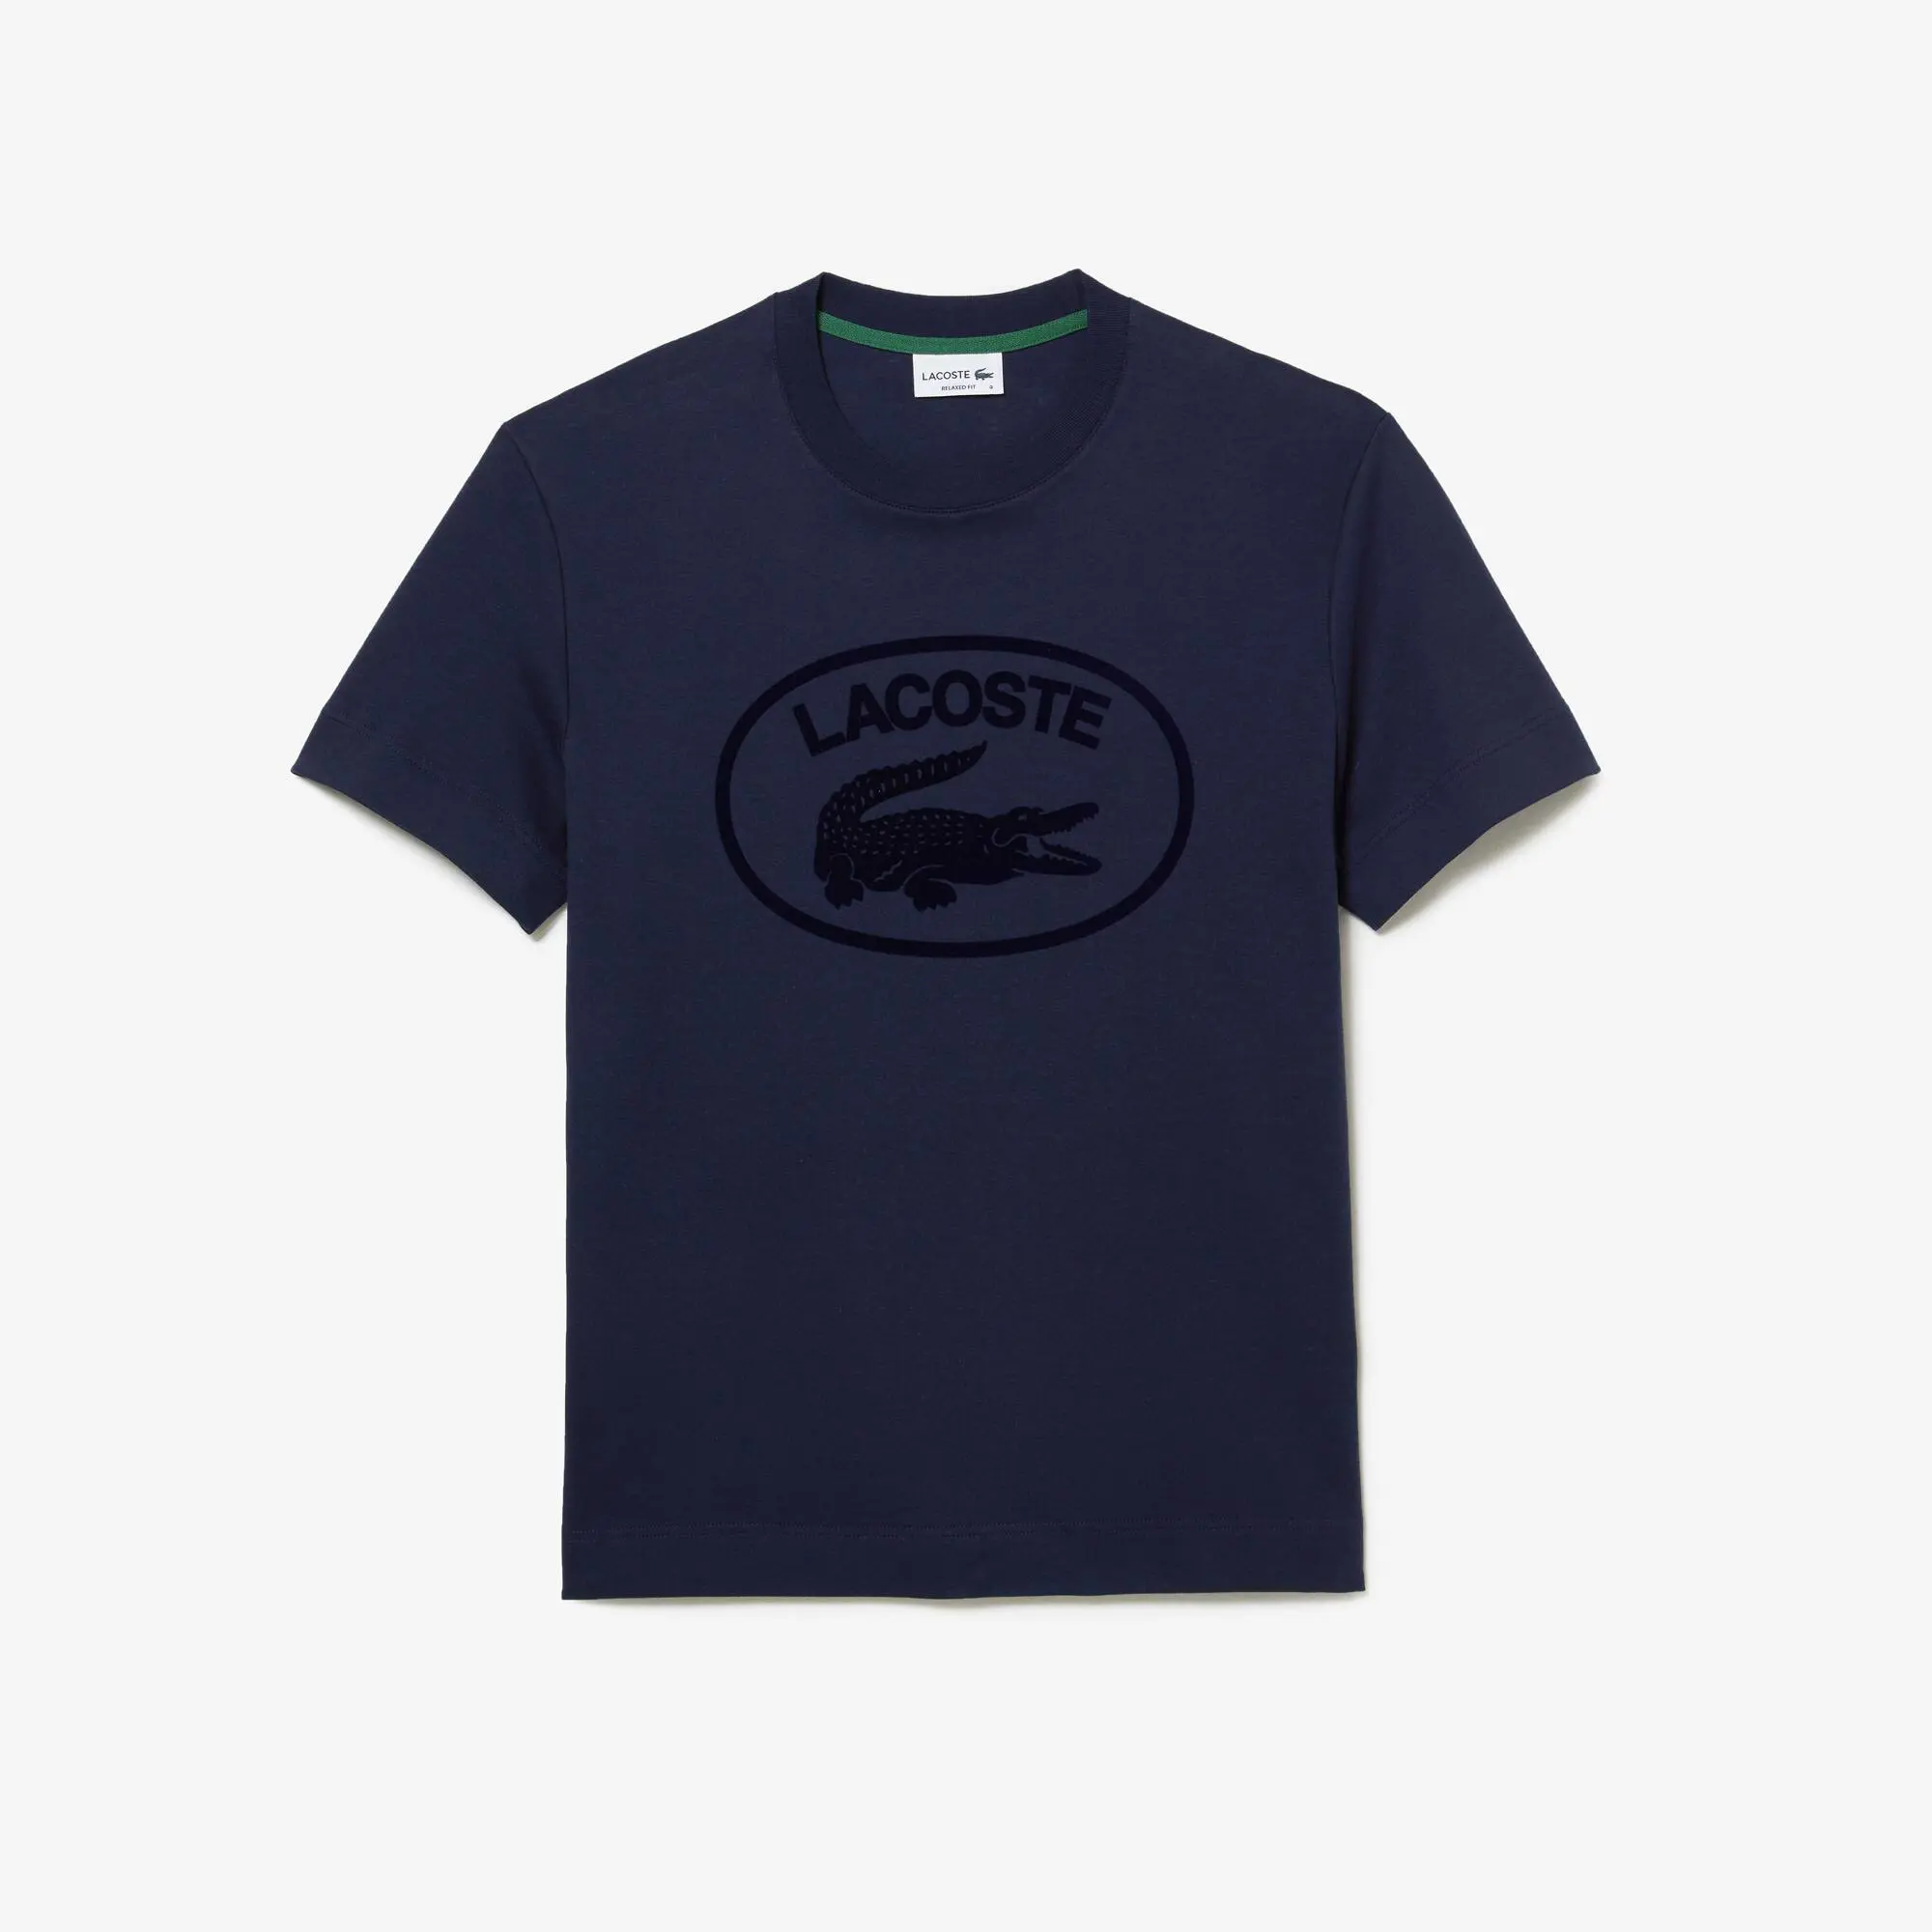 Lacoste Camiseta de hombre Lacoste relaxed fit en algodón con detalles de la marca a tono. 2